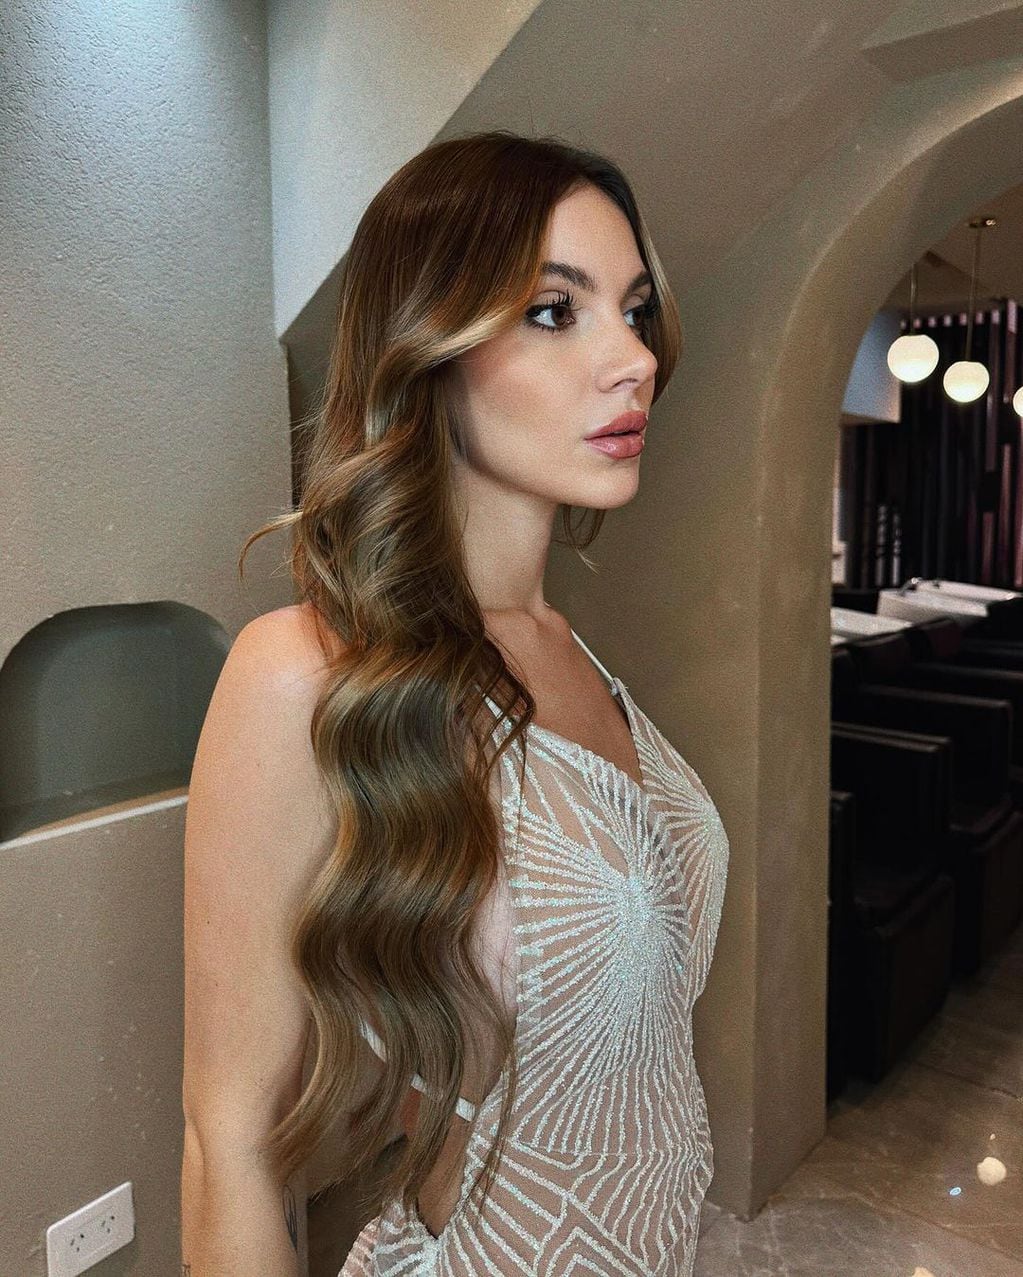 Sasha Ferro paralizó Instagram posando con un vestido con brillos y transparencias